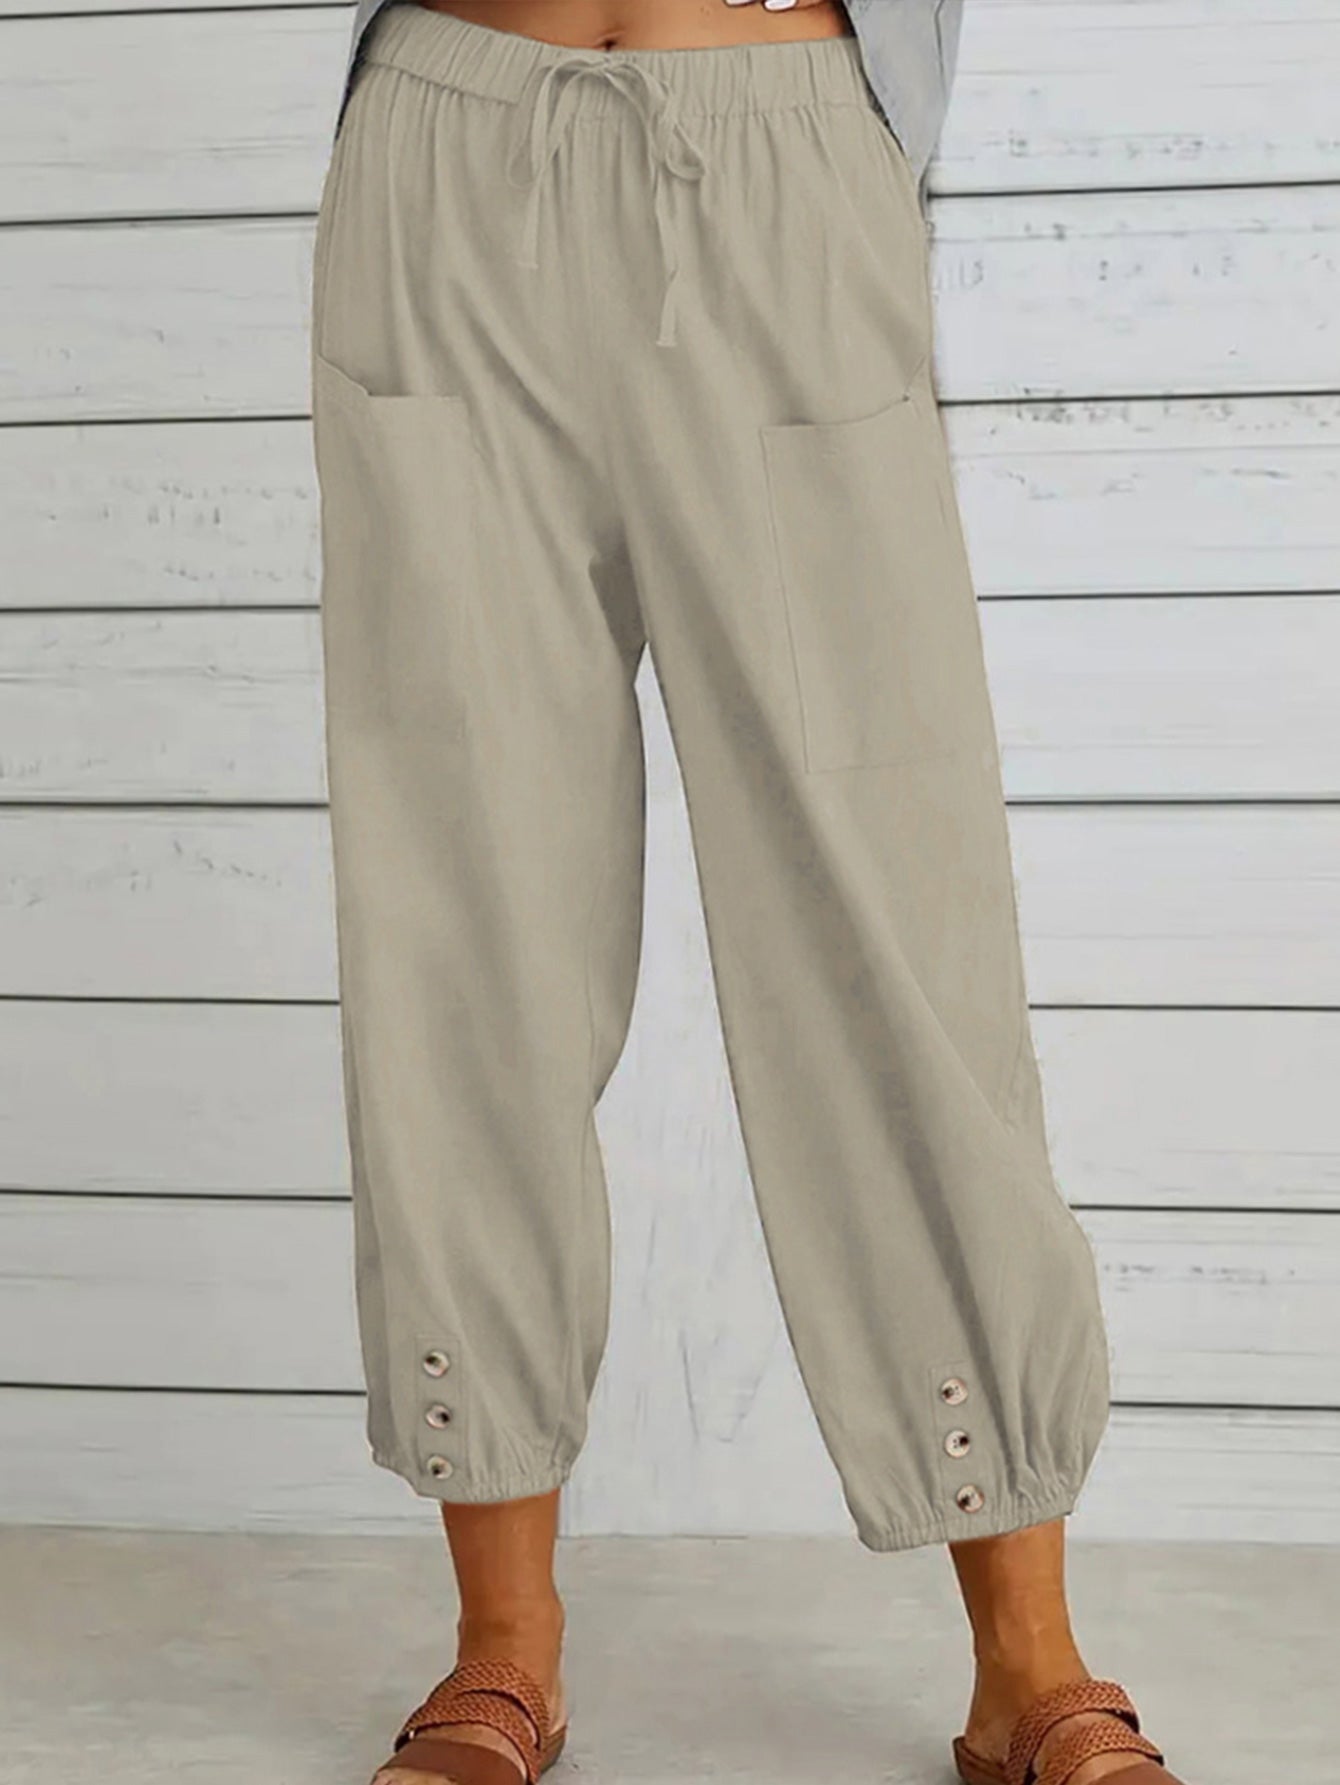 Decorative Button Cropped Pants - Beige / S - Bottoms - Pants - 1 - 2024